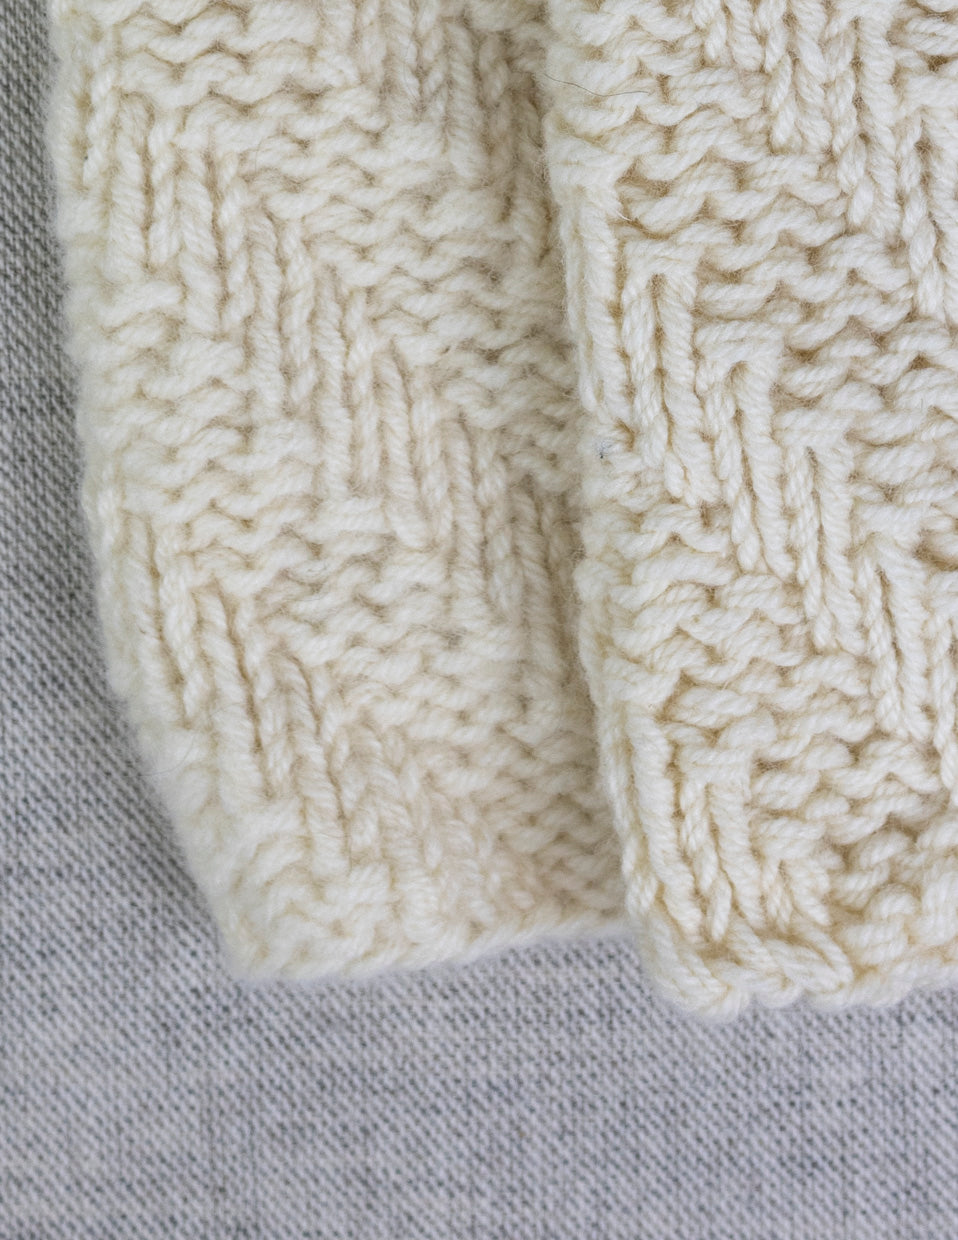 Neck warmer in fine lamb's wool, knitting kit